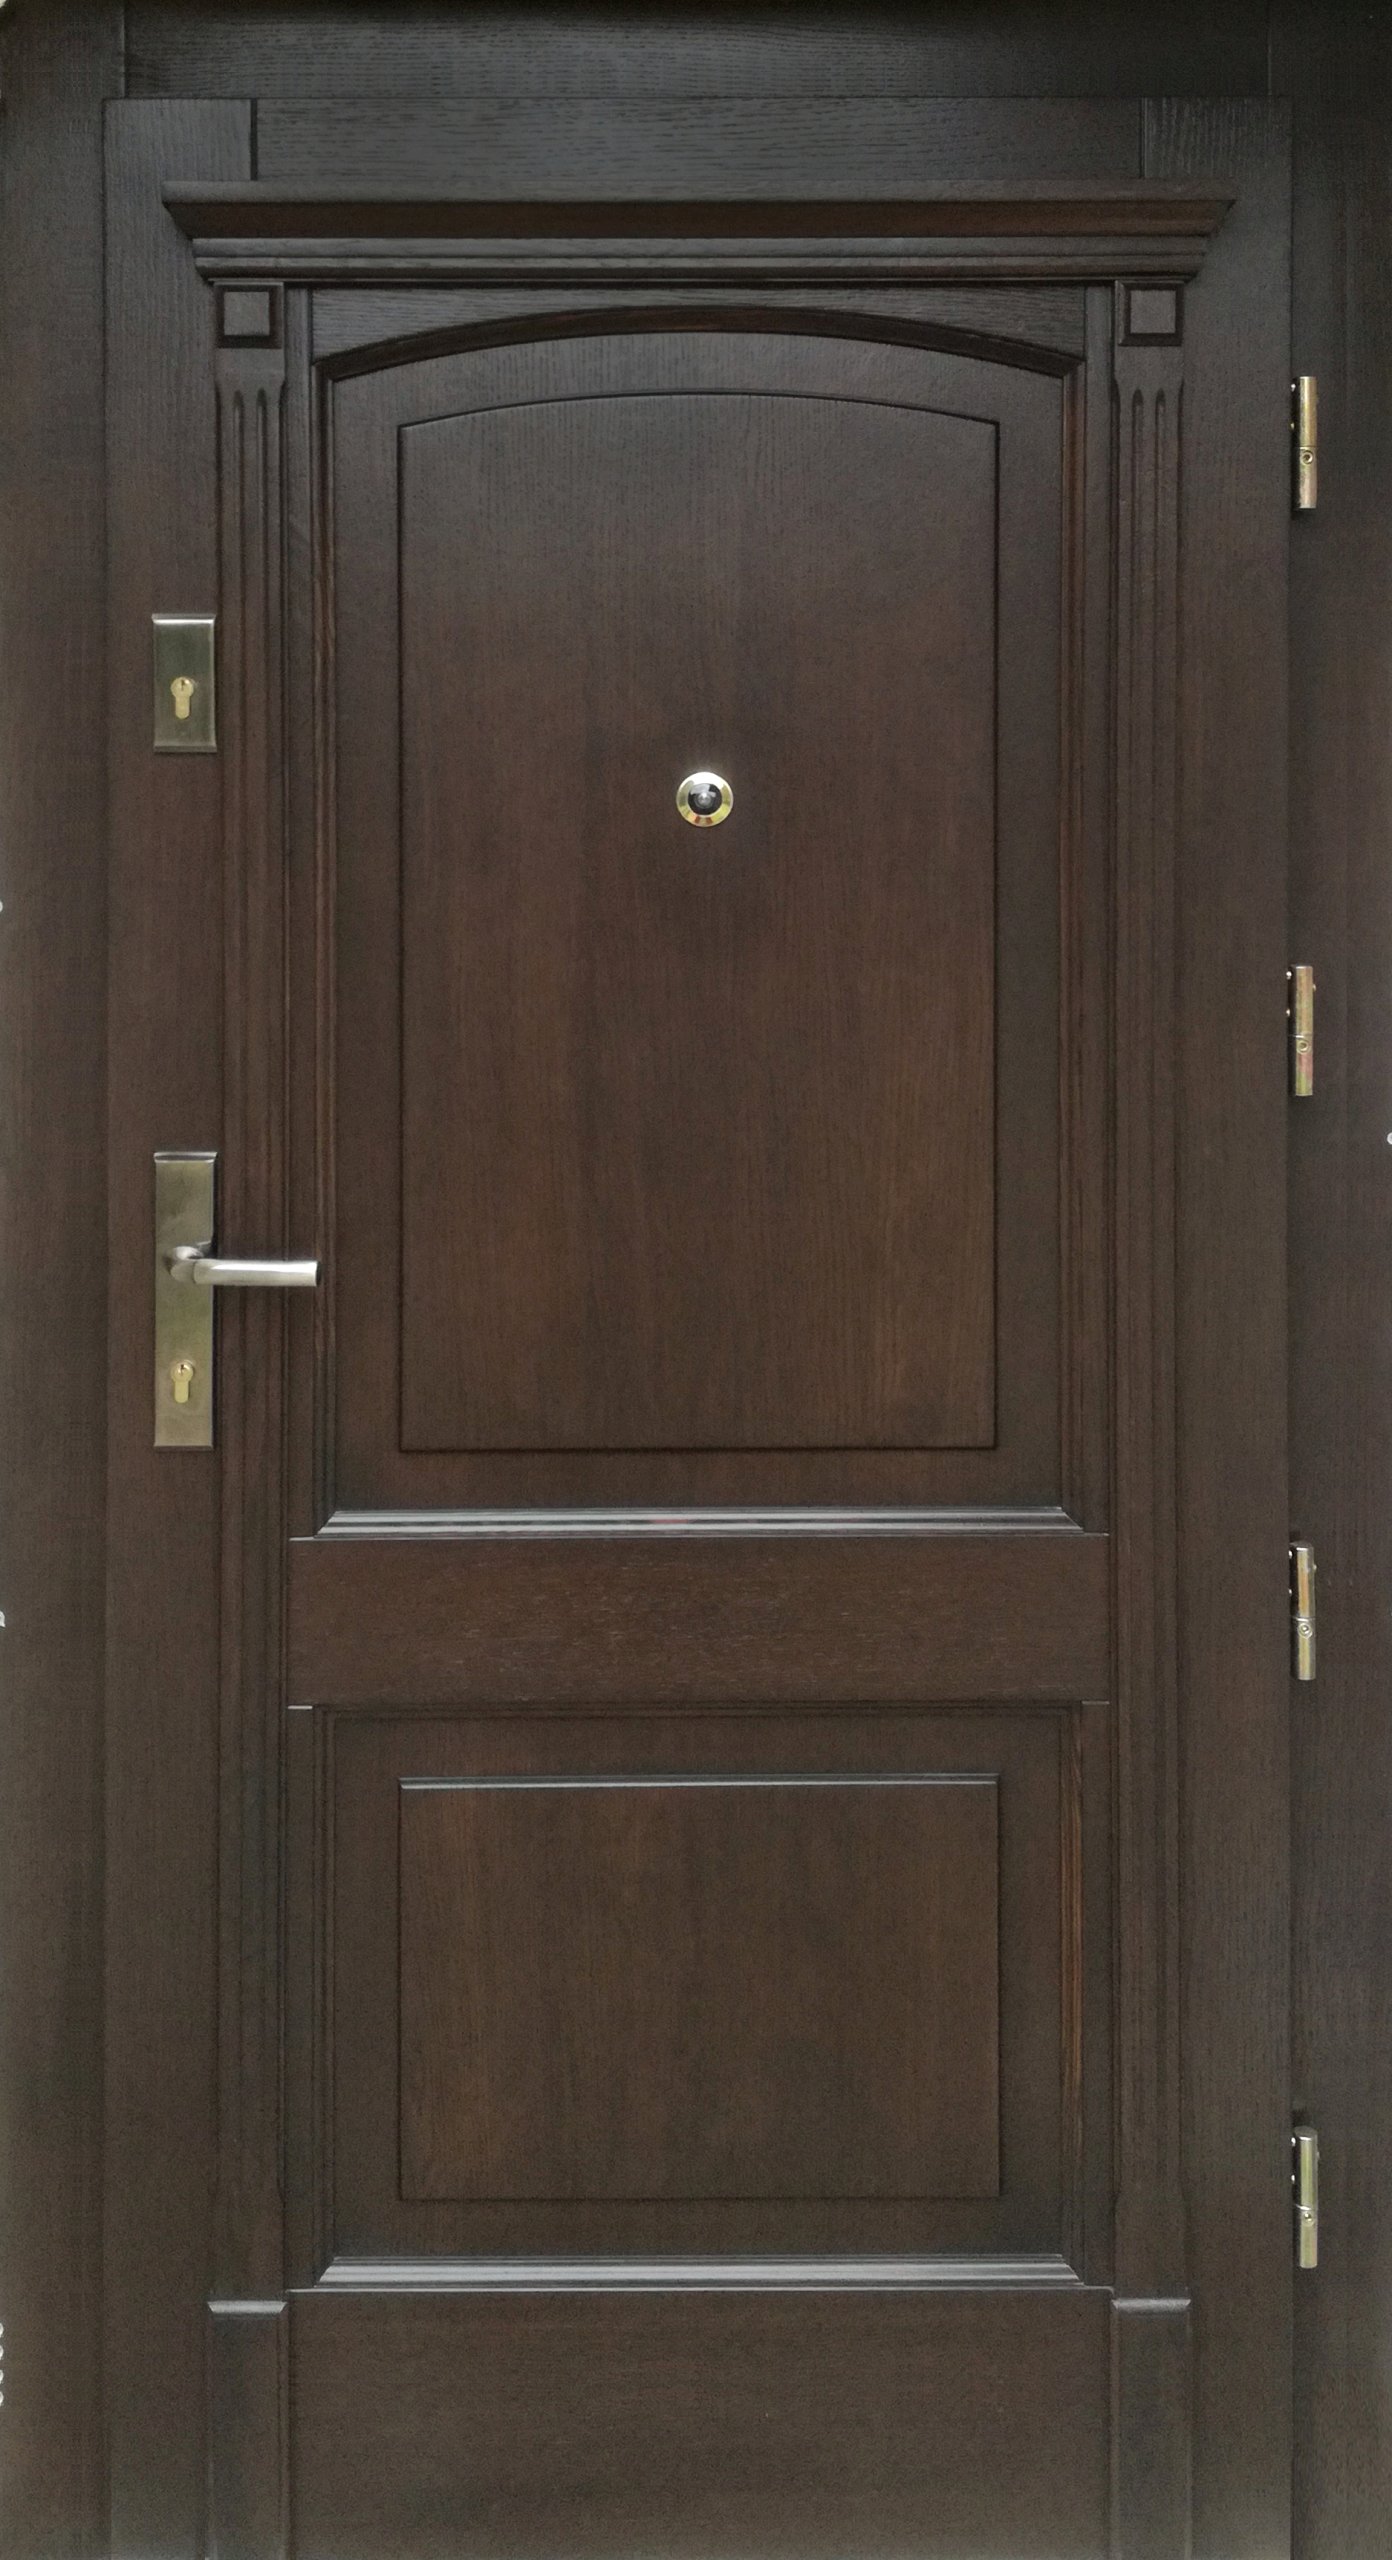 drzwi-zewn-trzne-wej-ciowe-drewniane-promocja-7304720532-oficjalne